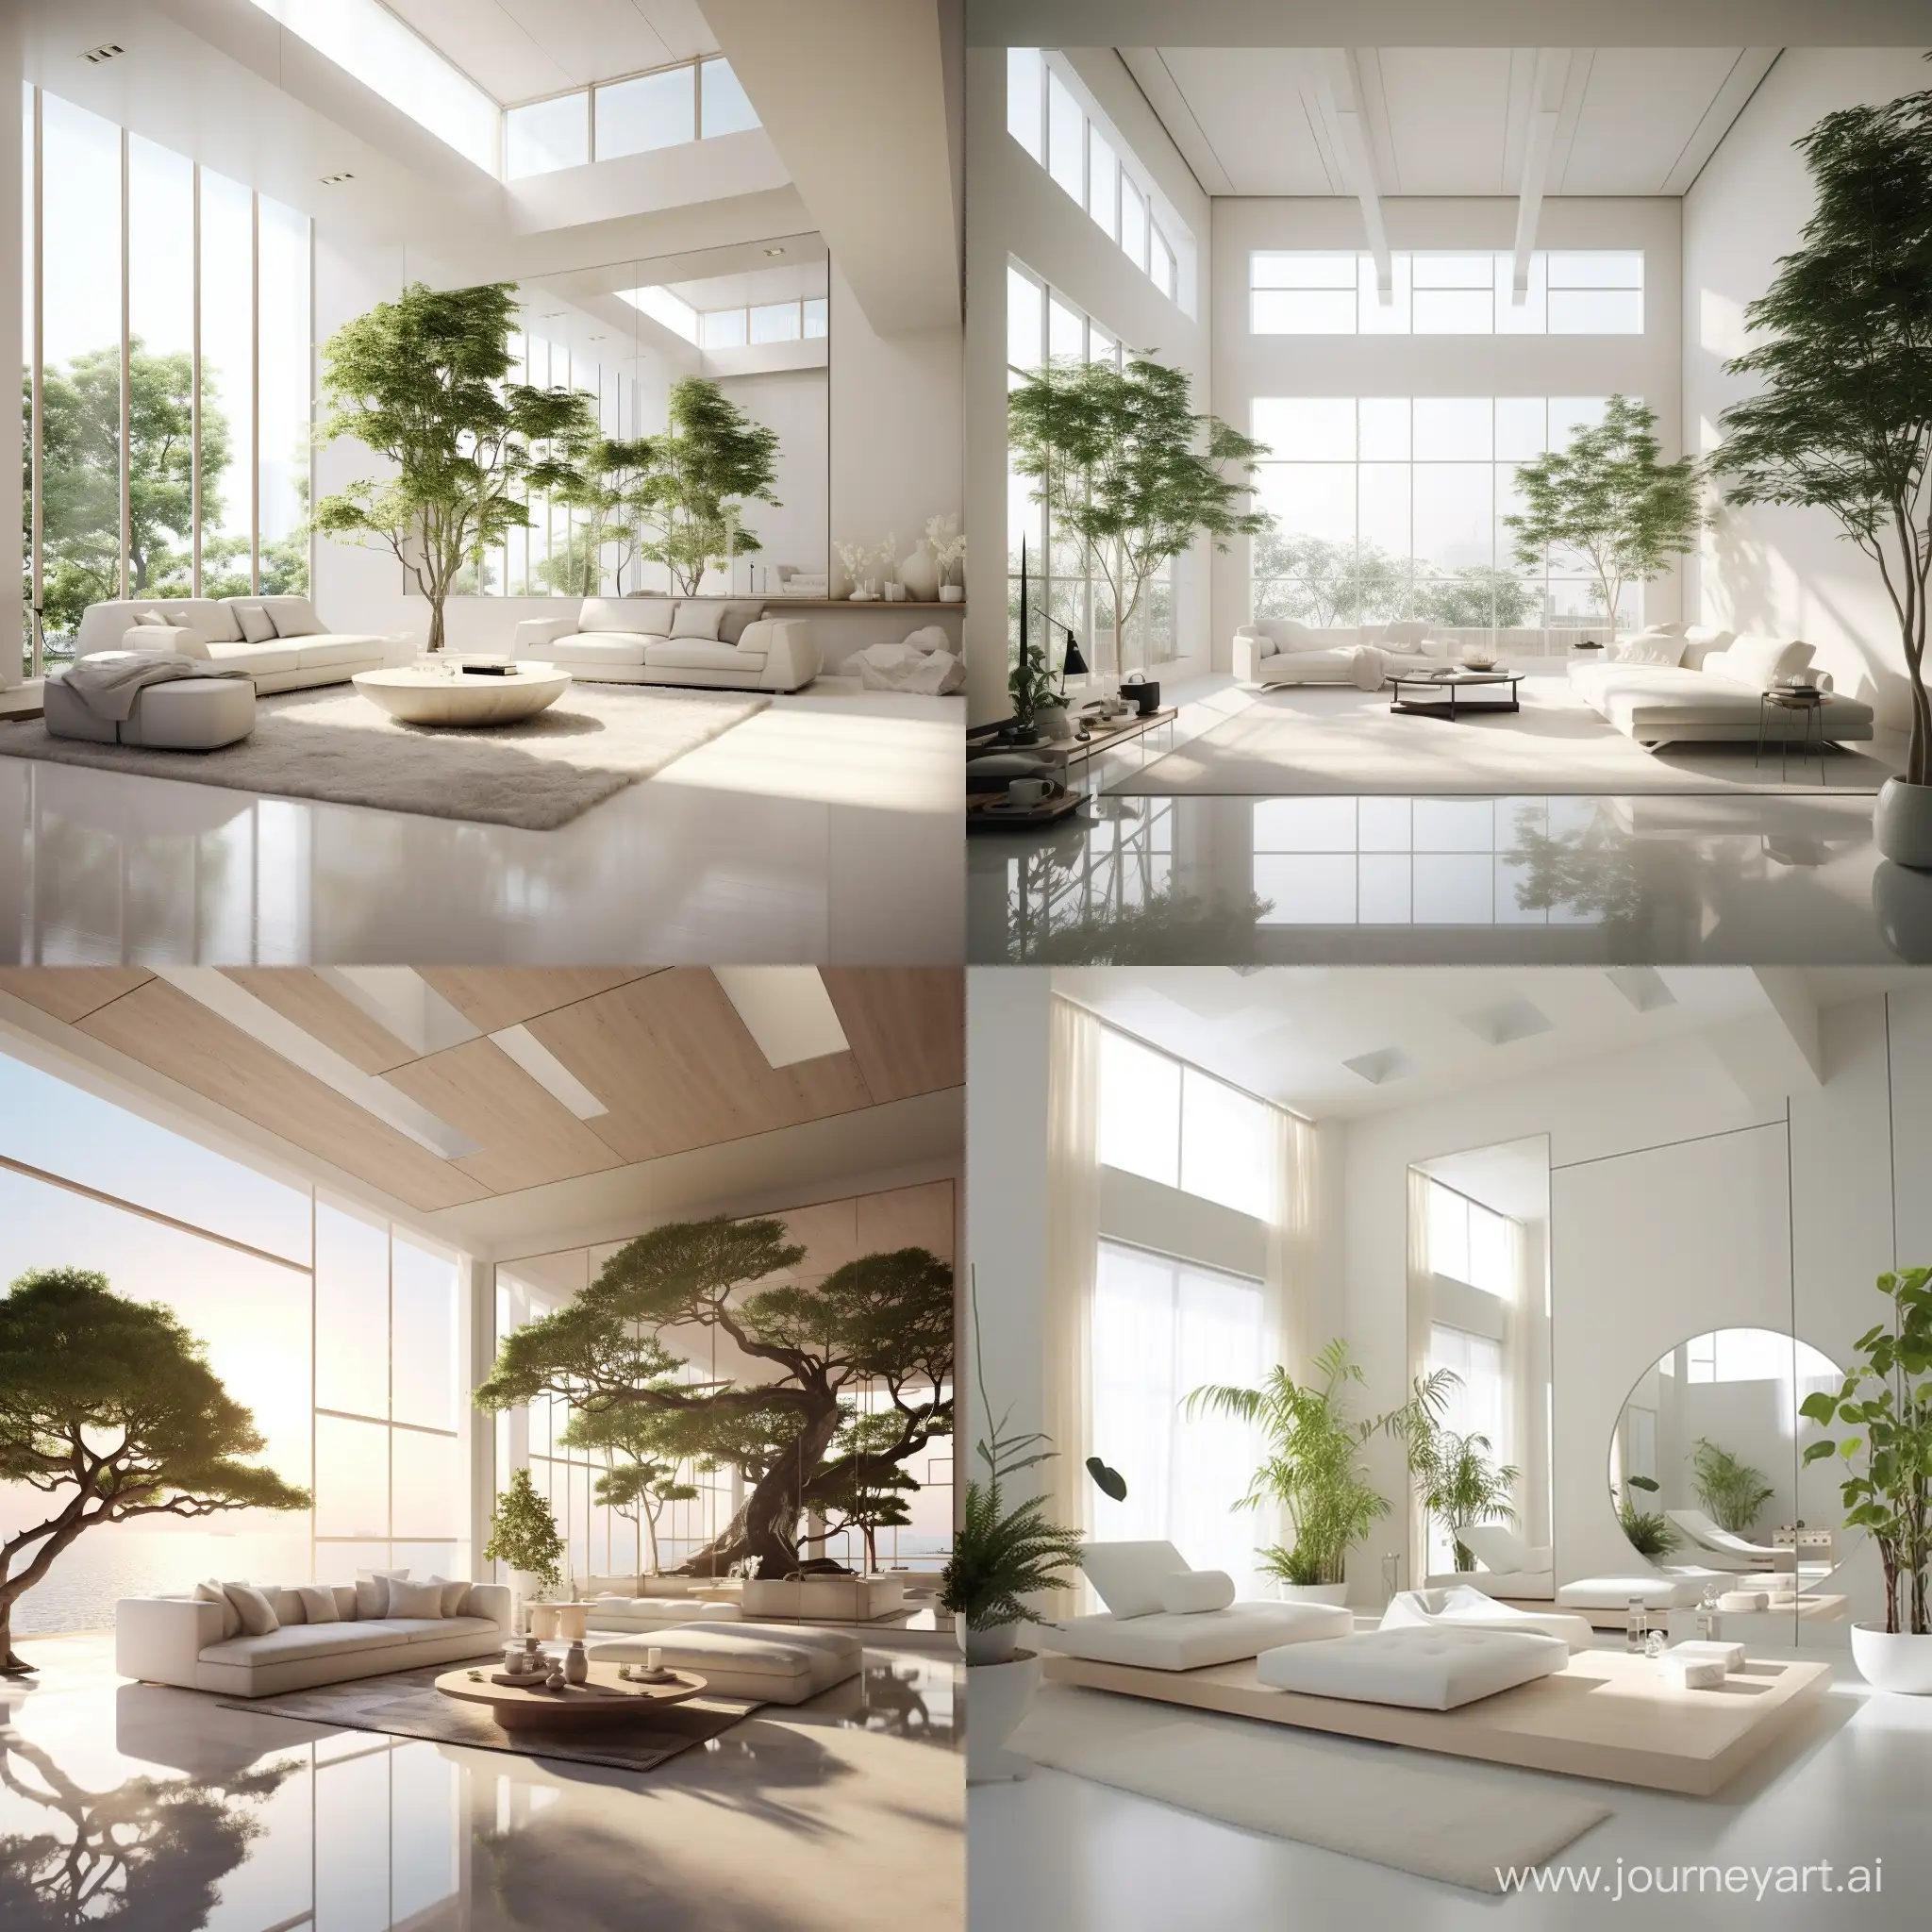 белая комната в стиле японский минимализм с высокими потолками огромными окнами вдоль всех стен. Вдоль окон стоят мягкие шезлонги и растет очень много высоких растений из пола, а на потолке отражение воды